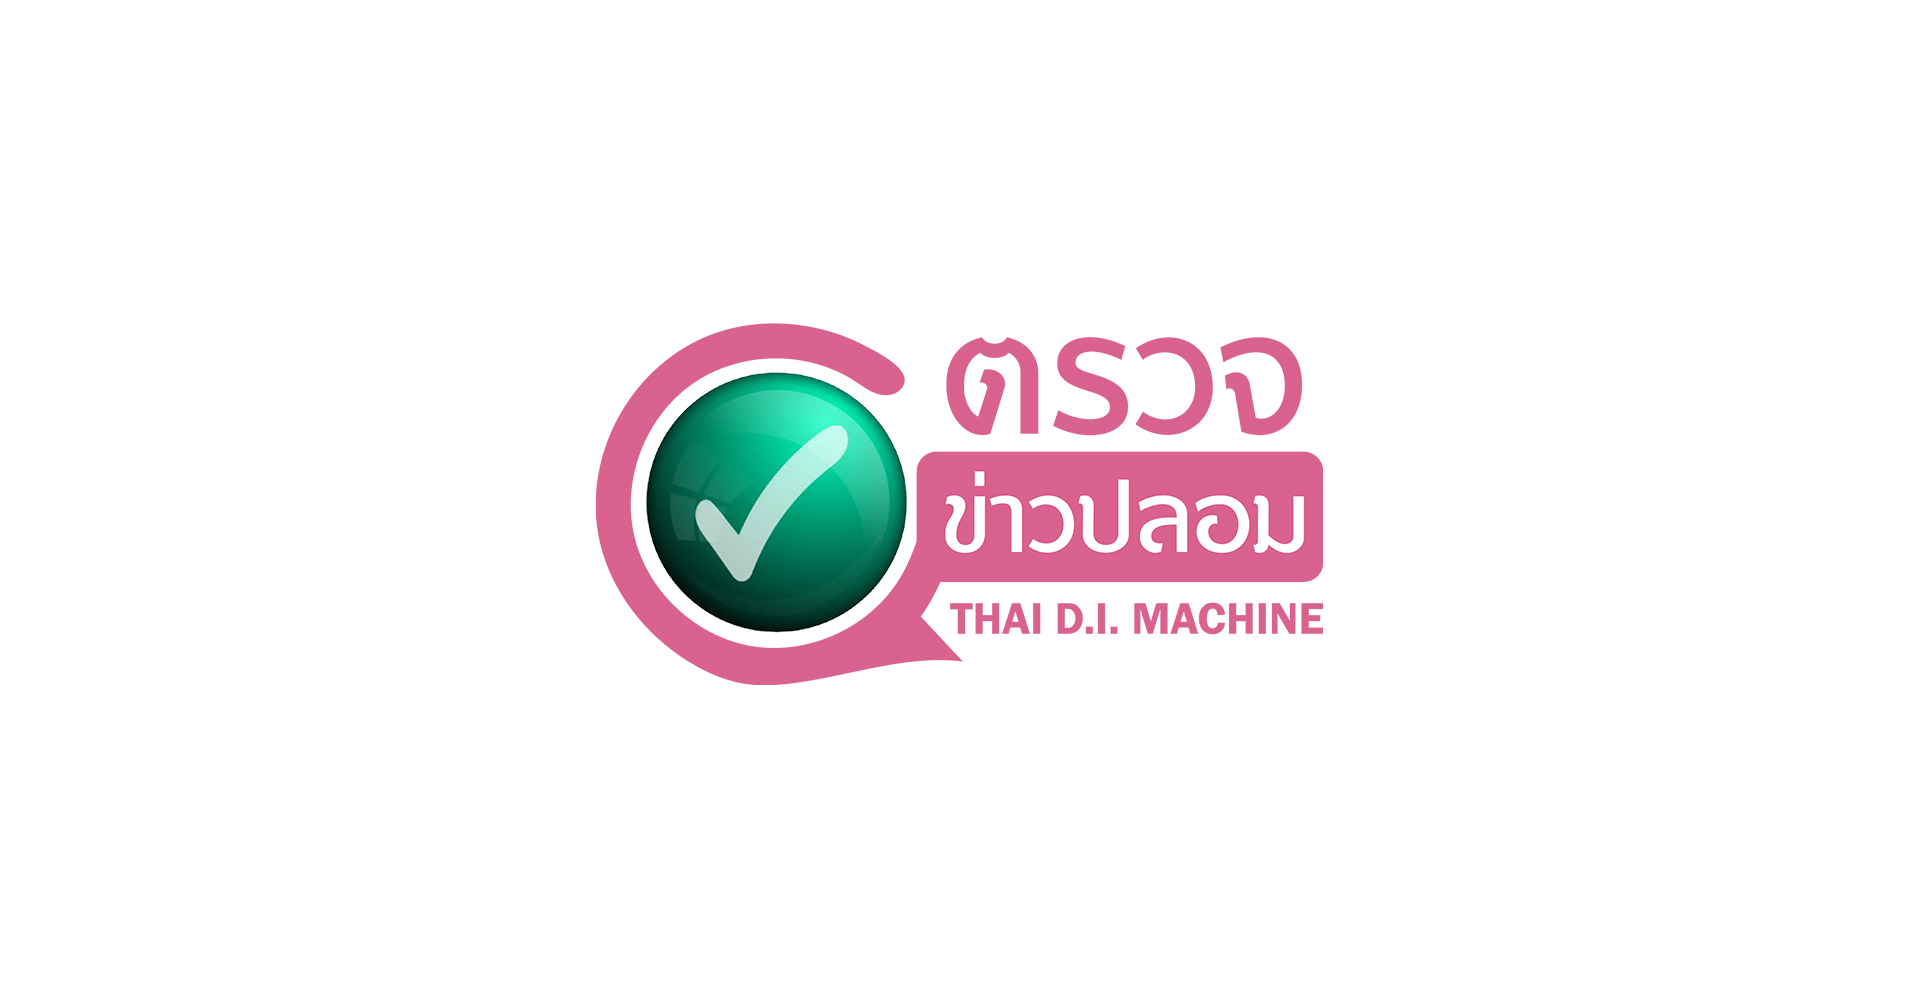 THAI D.I. MACHINE เว็บตรวจข่าวปลอมไทยด้วย AI ผลงานสร้างโดยจุฬาฯ และมจพ.